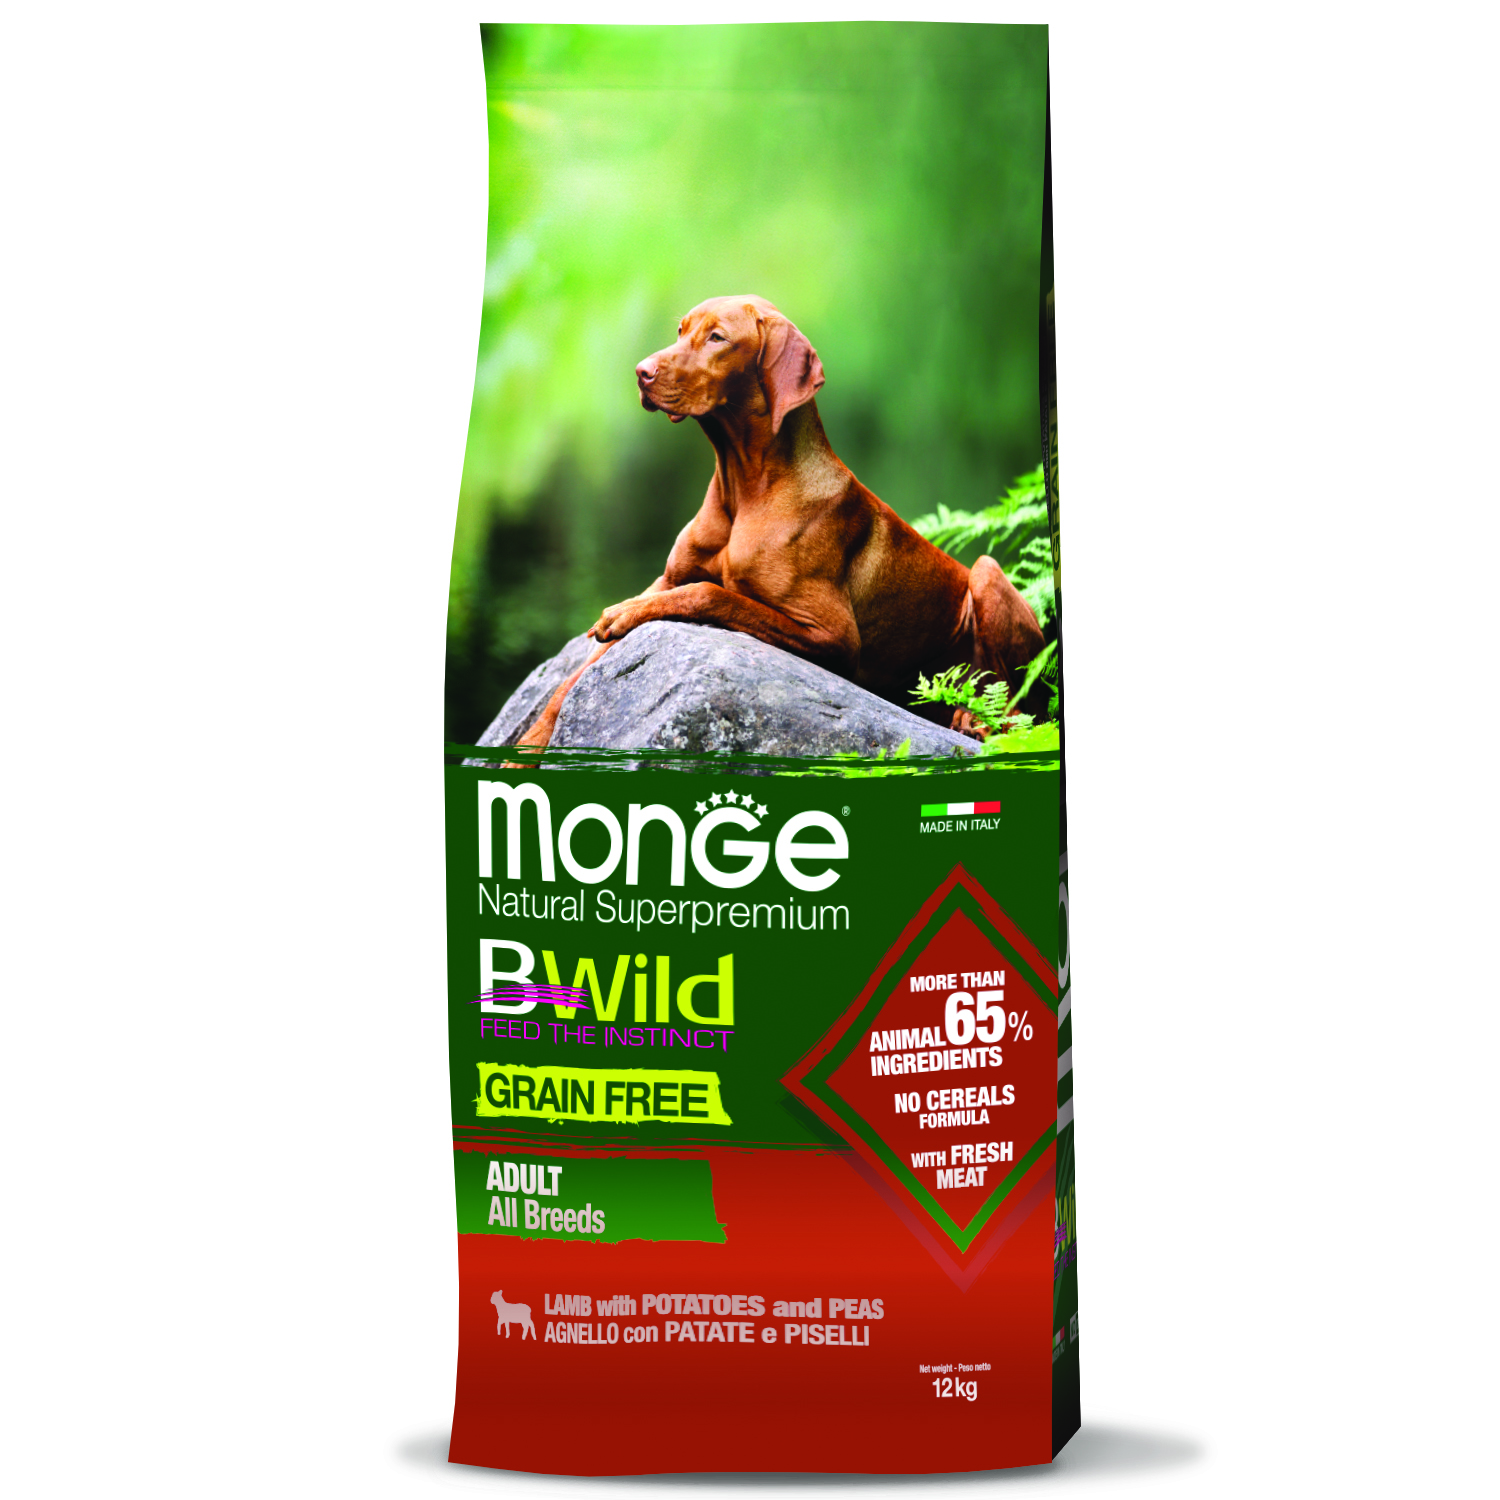 Monge Dog BWild GRAIN FREE беззерновой корм из мяса ягненка с картофелем для взрослых собак всех пород 12 кг зоомагазине gavgav-market